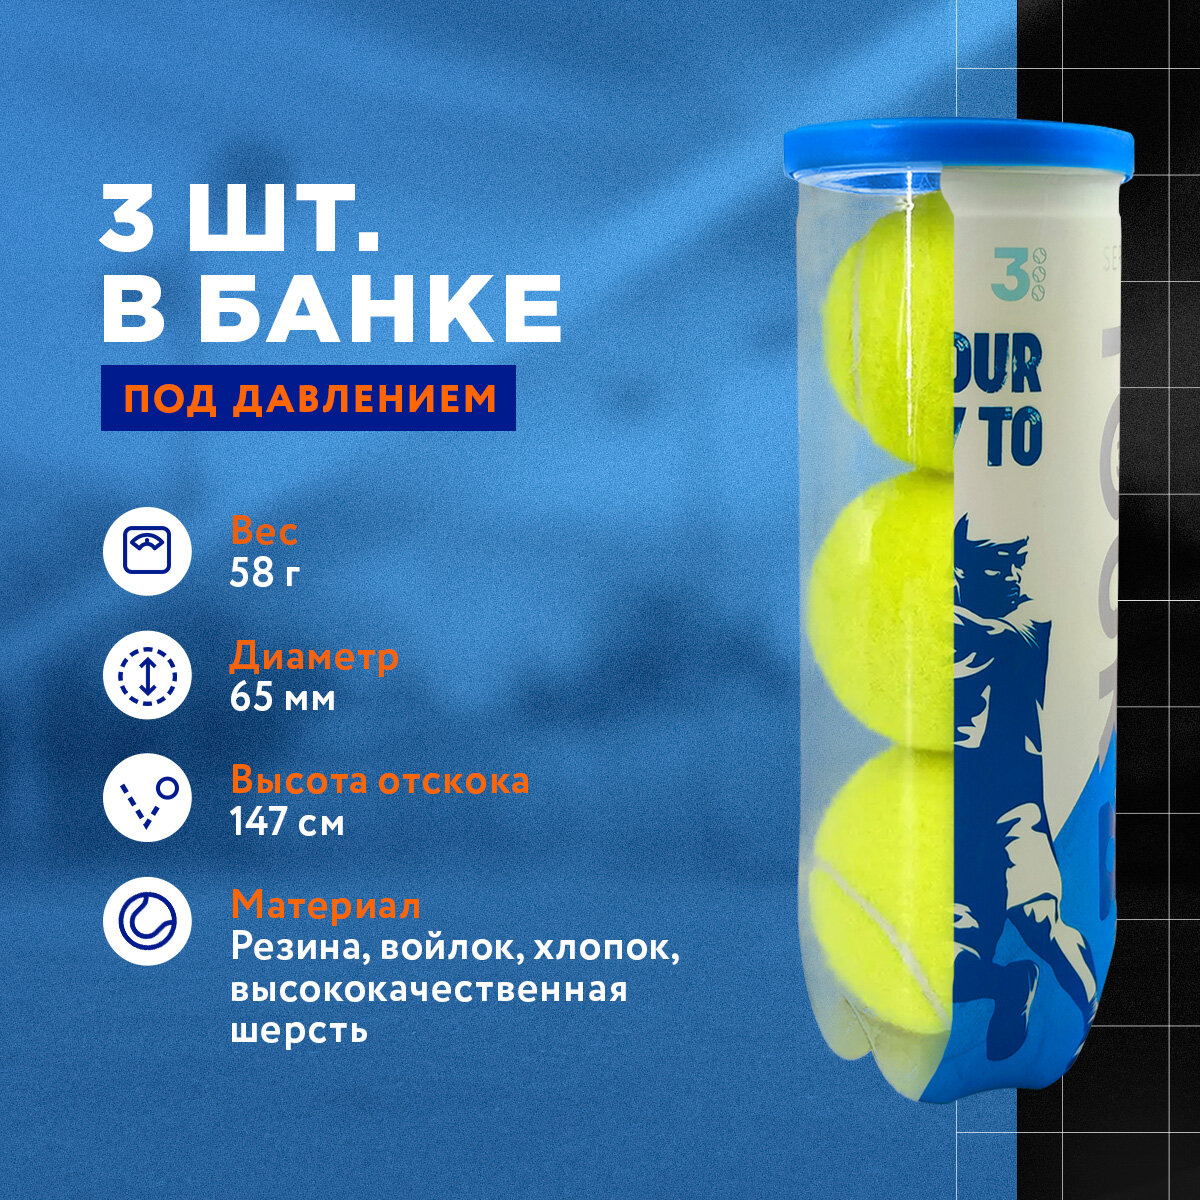 Теннисный мяч для большого тенниса профессиональный Top Tennis tbtour3 - 3 шт в в упаковке.